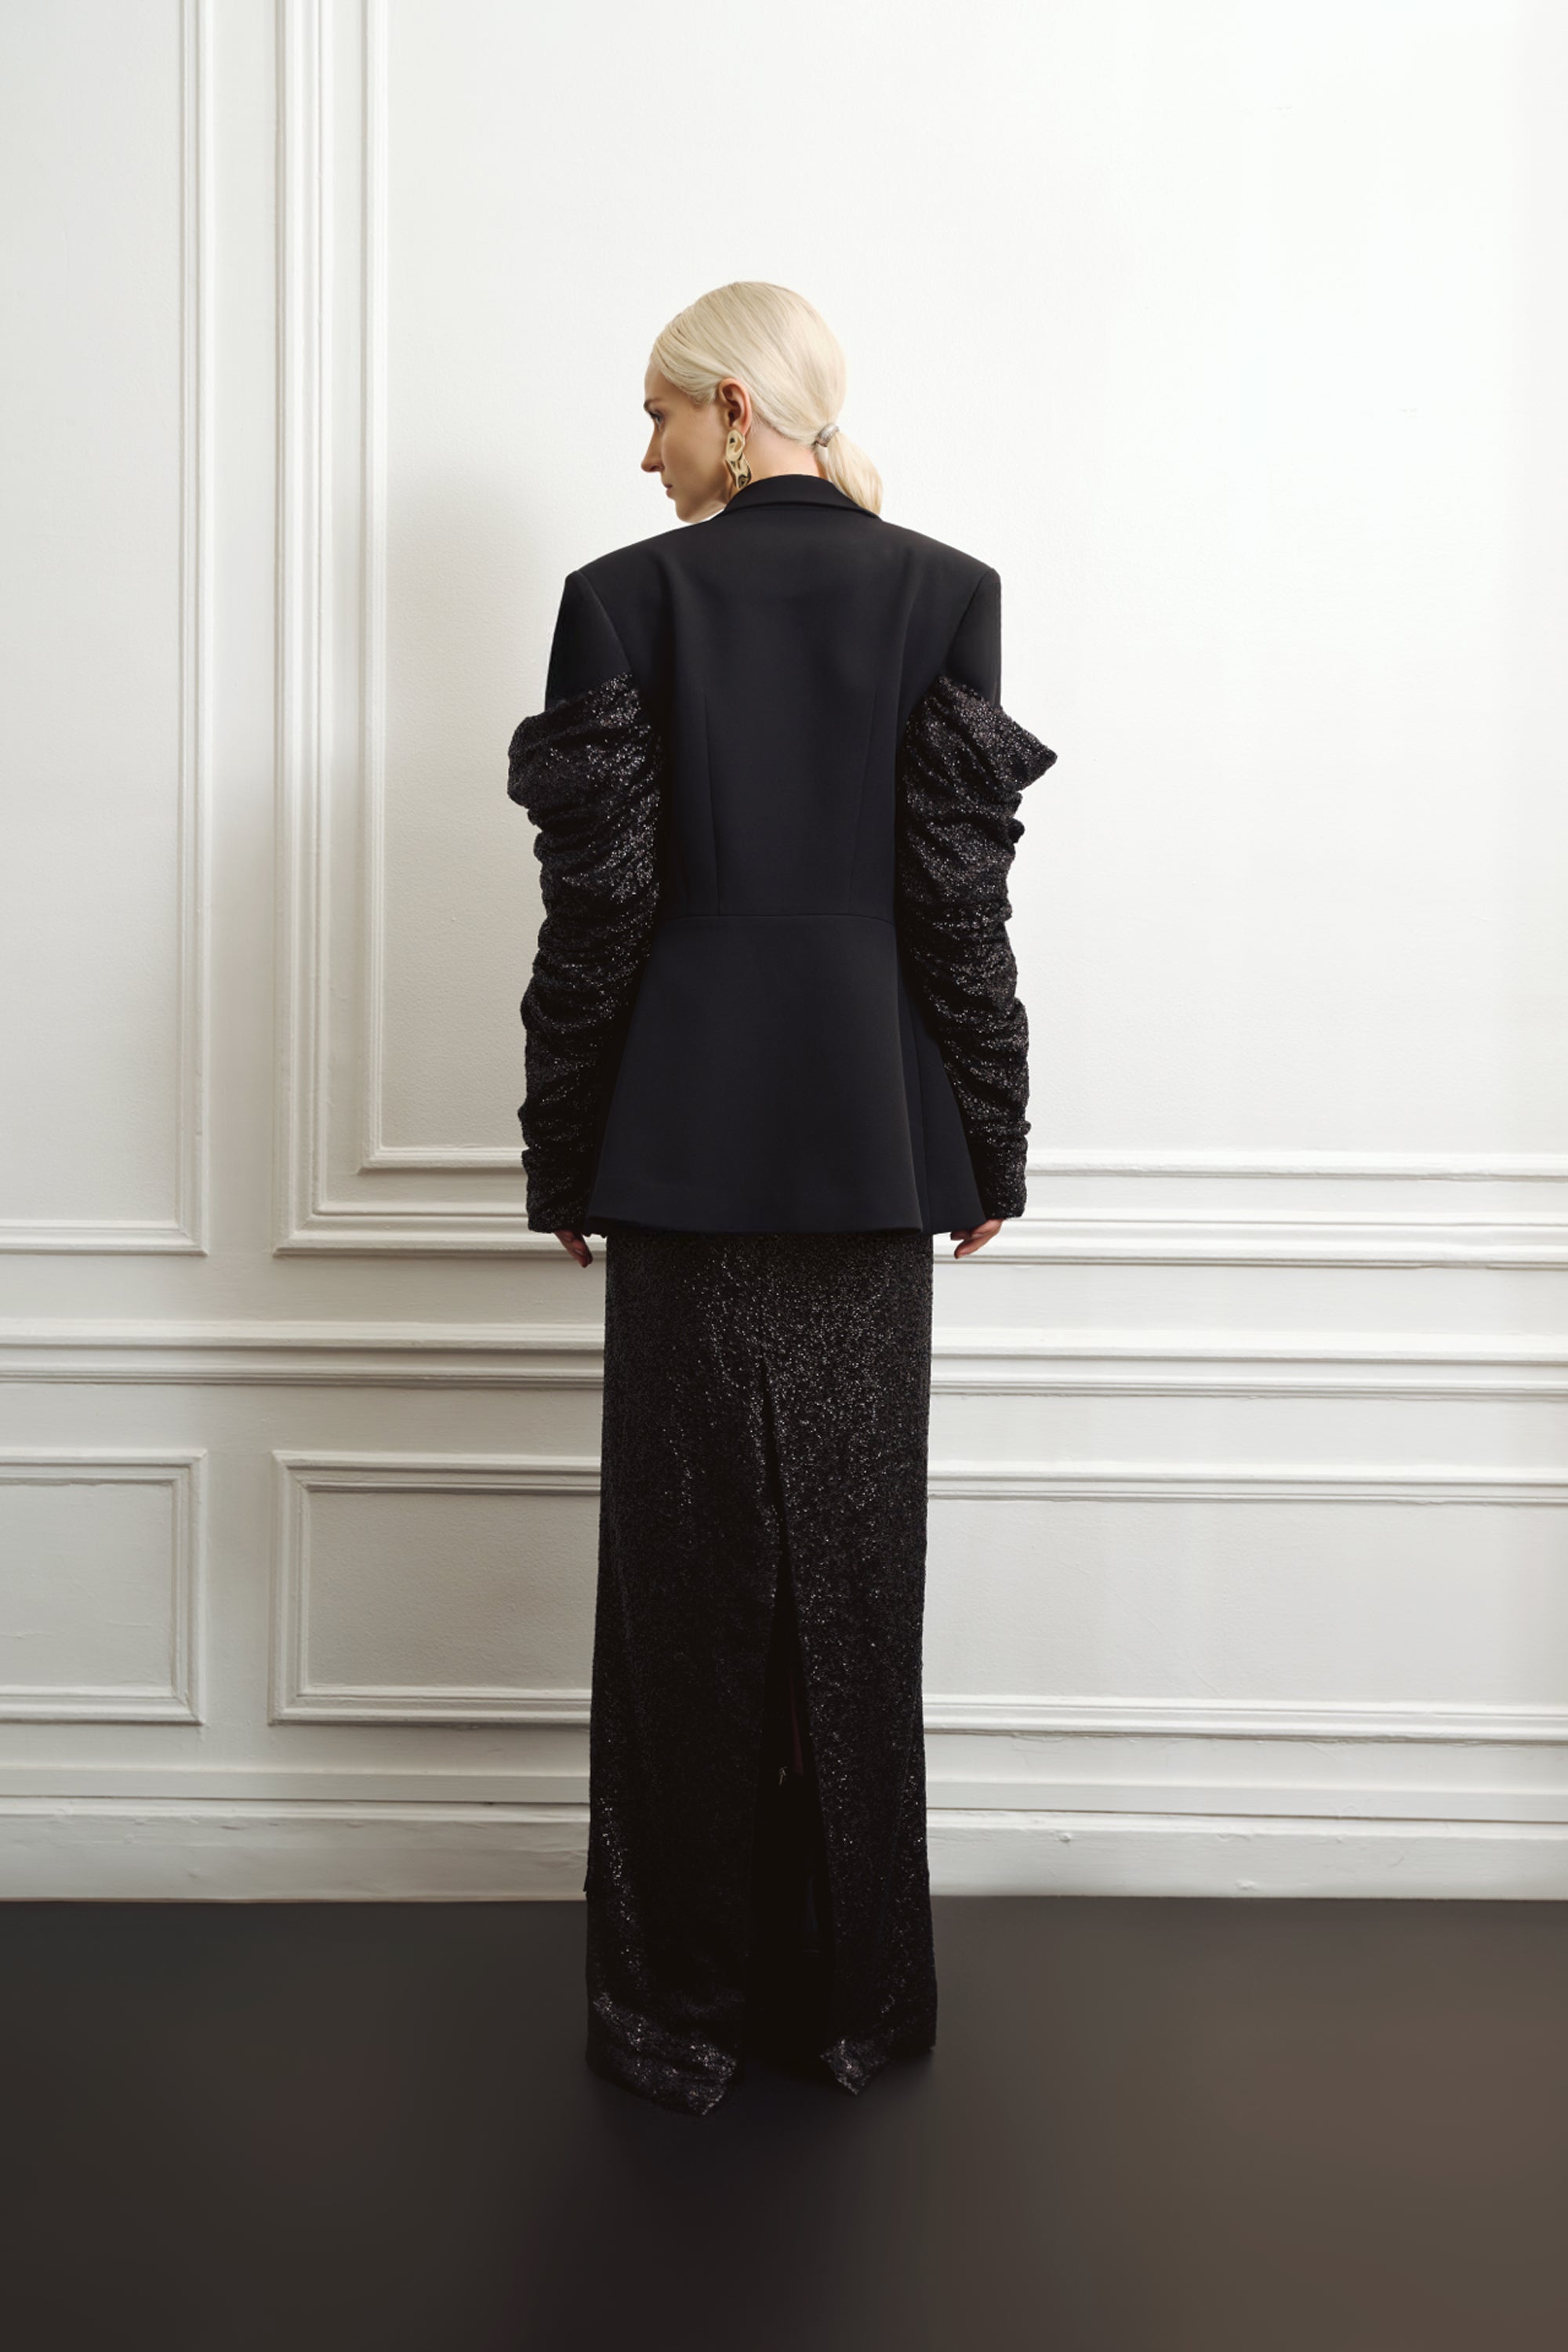 Long black sequins skirt